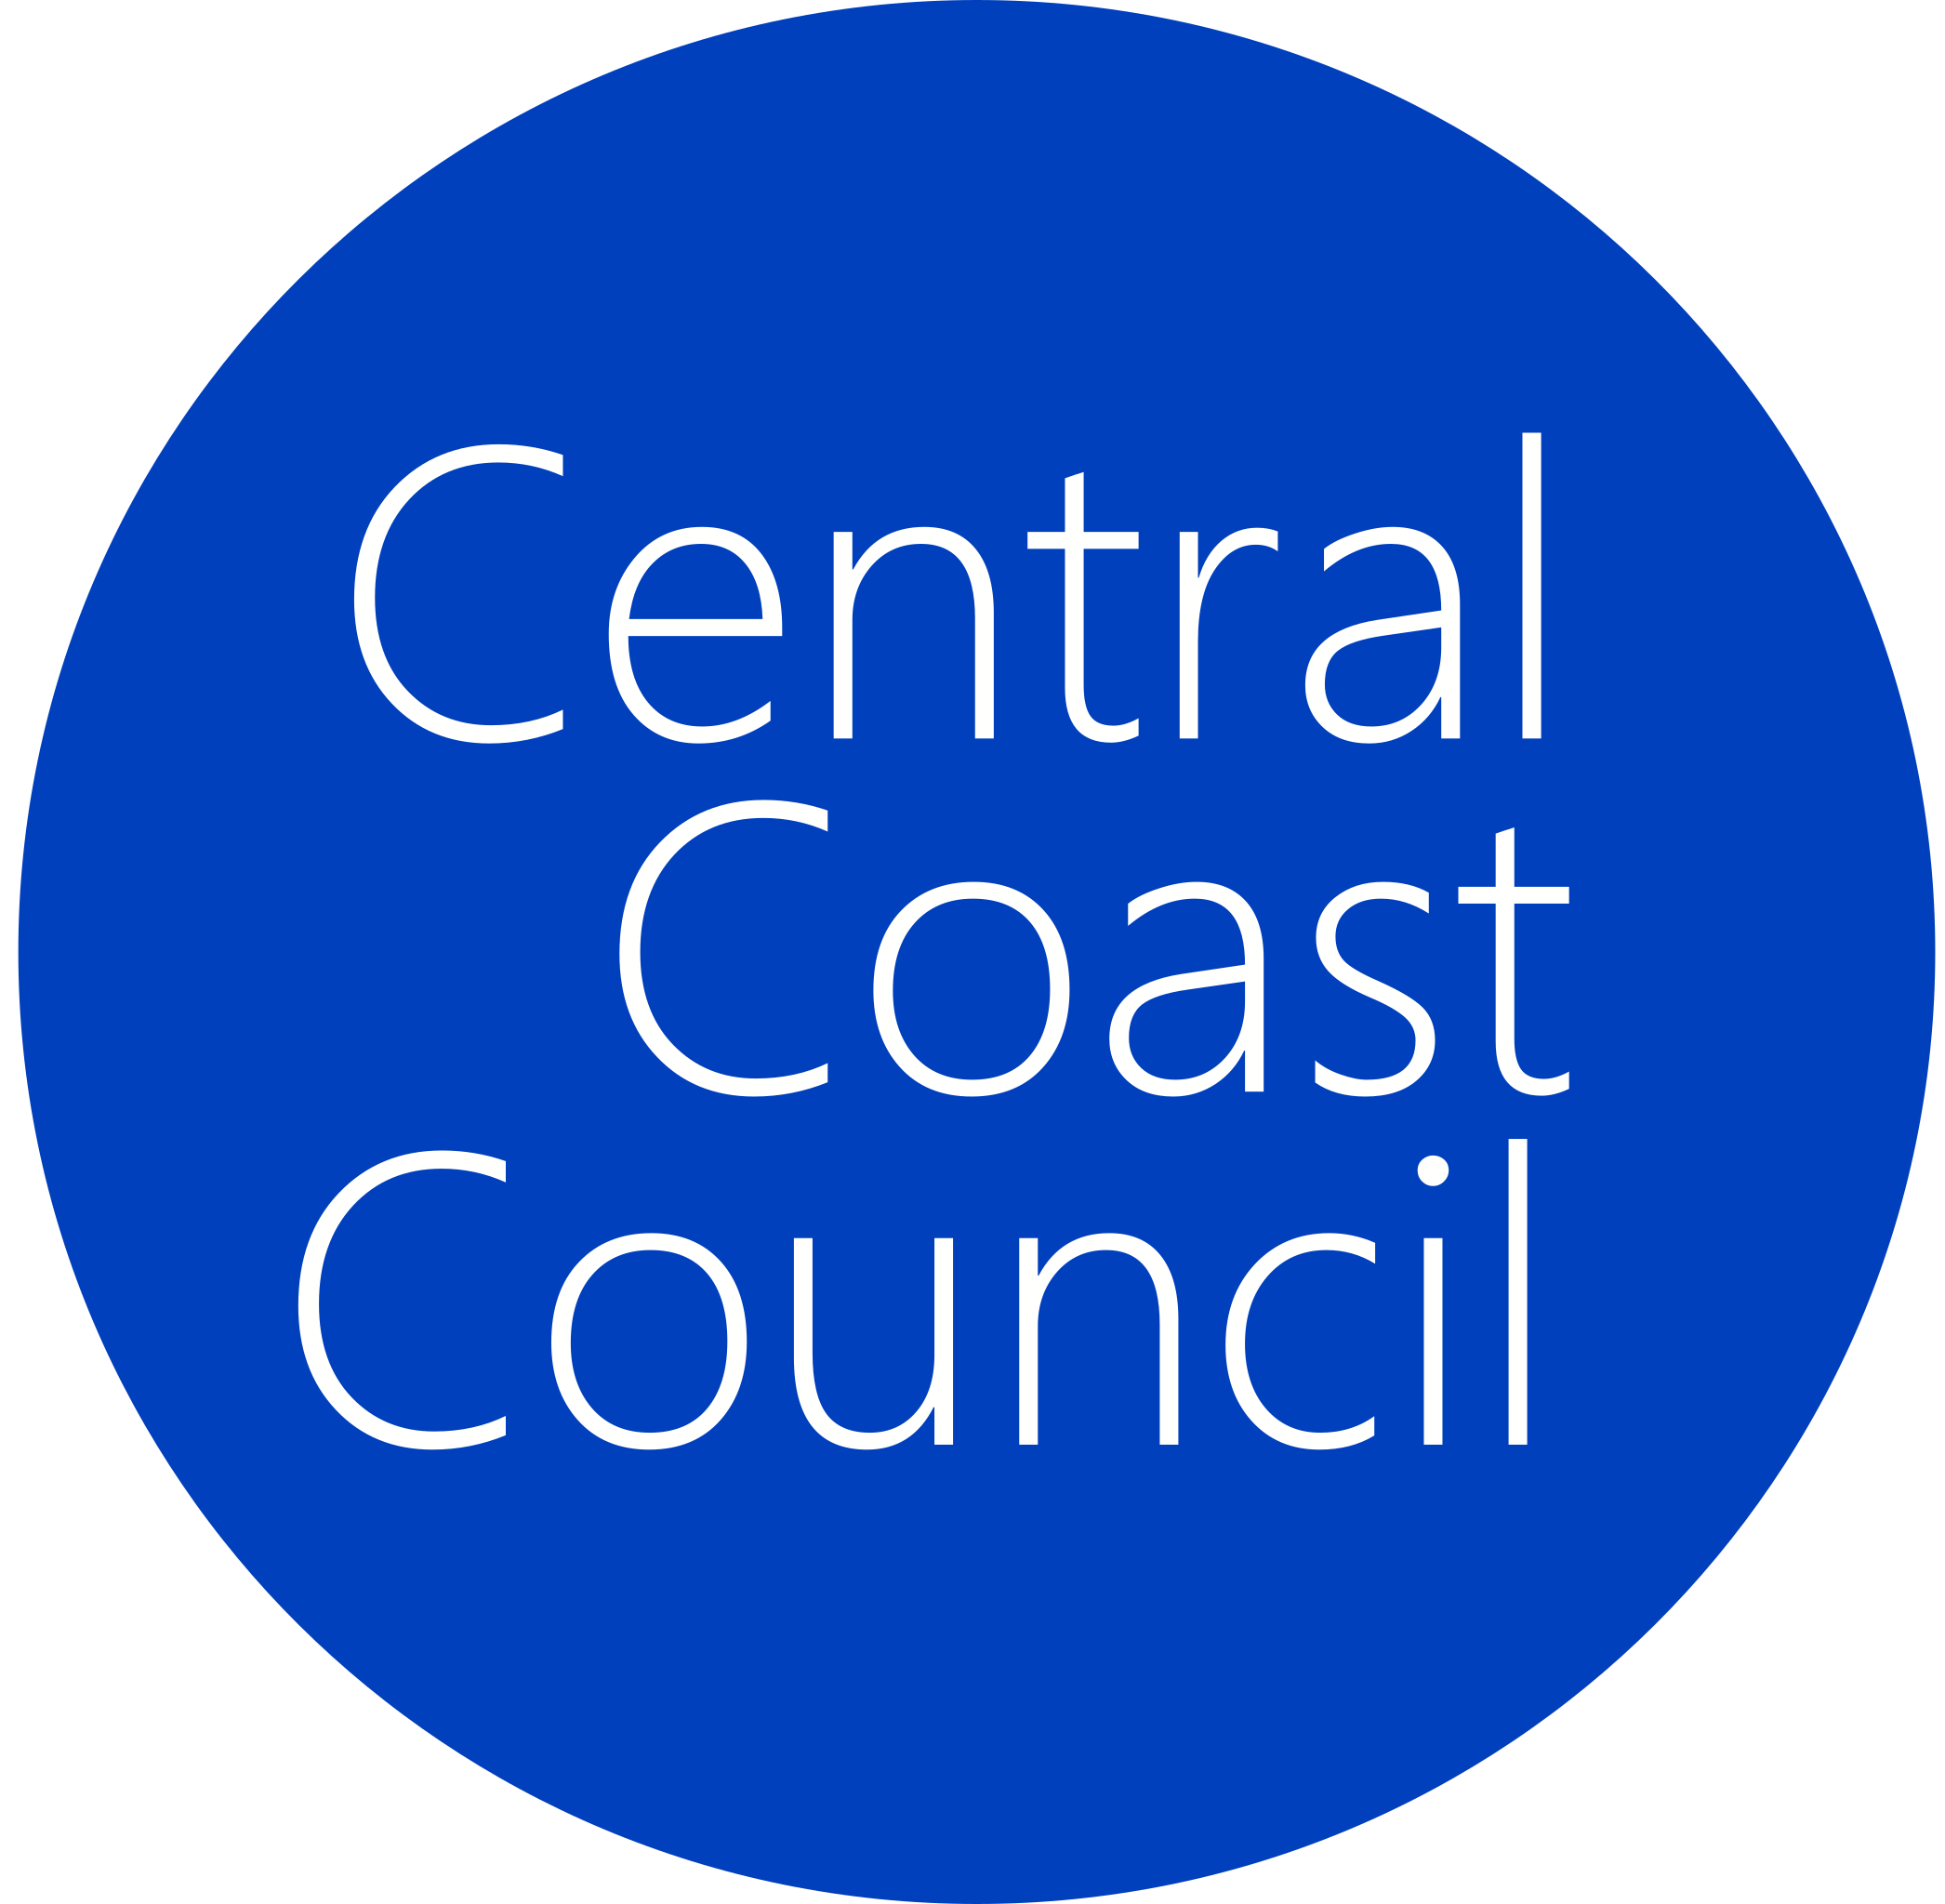 Central_Coast_Council_logo.svg